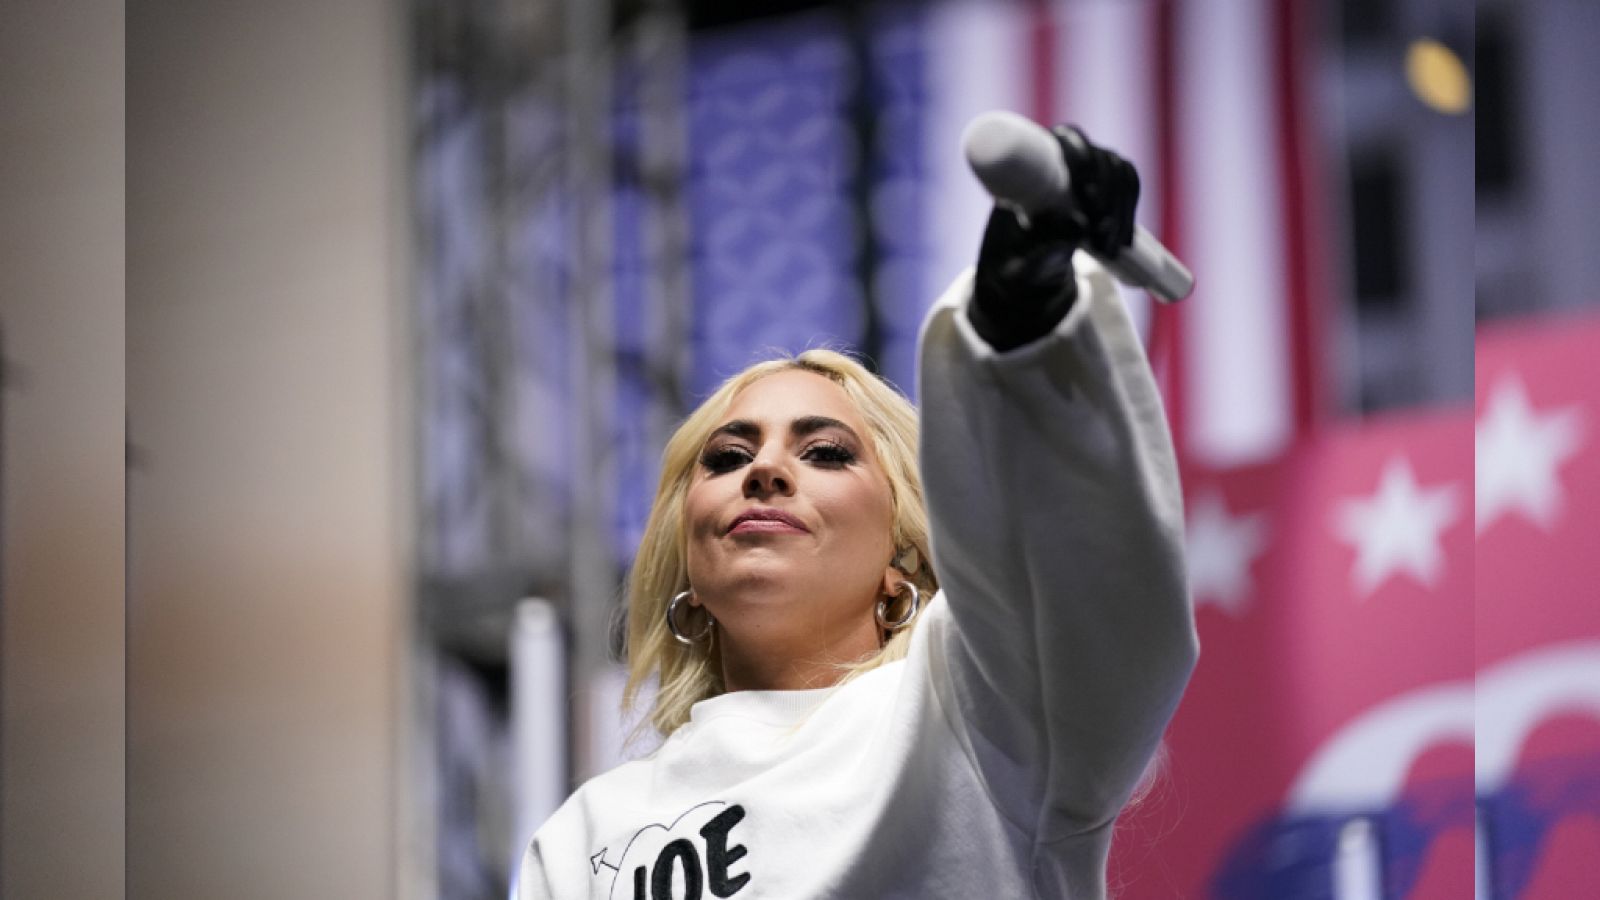  Lady Gaga anuncia que cantará el himno de EEUU durante la investidura de Joe Biden el próximo 20 de enero